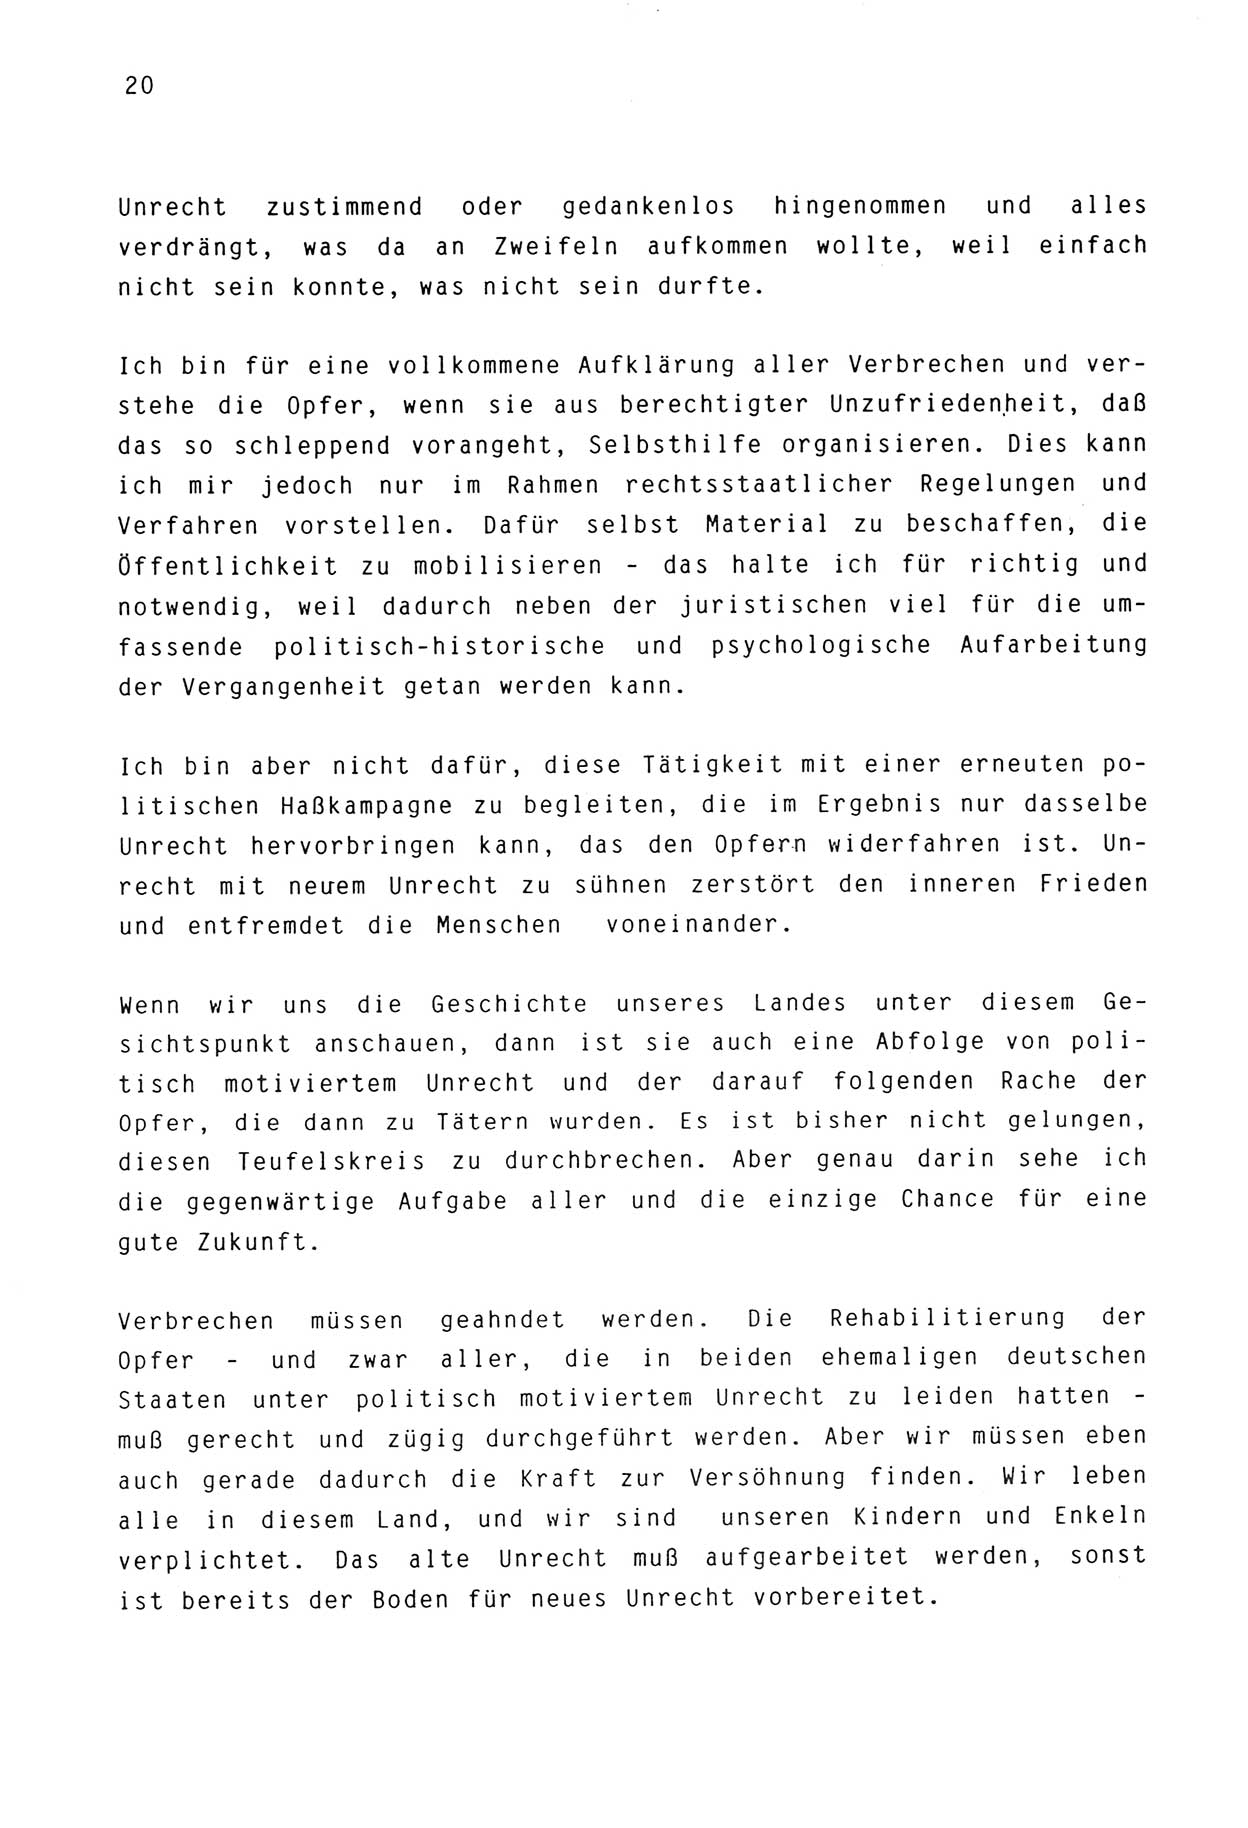 Zwie-Gespräch, Beiträge zur Aufarbeitung der Stasi-Vergangenheit [Deutsche Demokratische Republik (DDR)], Ausgabe Nr. 3, Berlin 1991, Seite 20 (Zwie-Gespr. Ausg. 3 1991, S. 20)